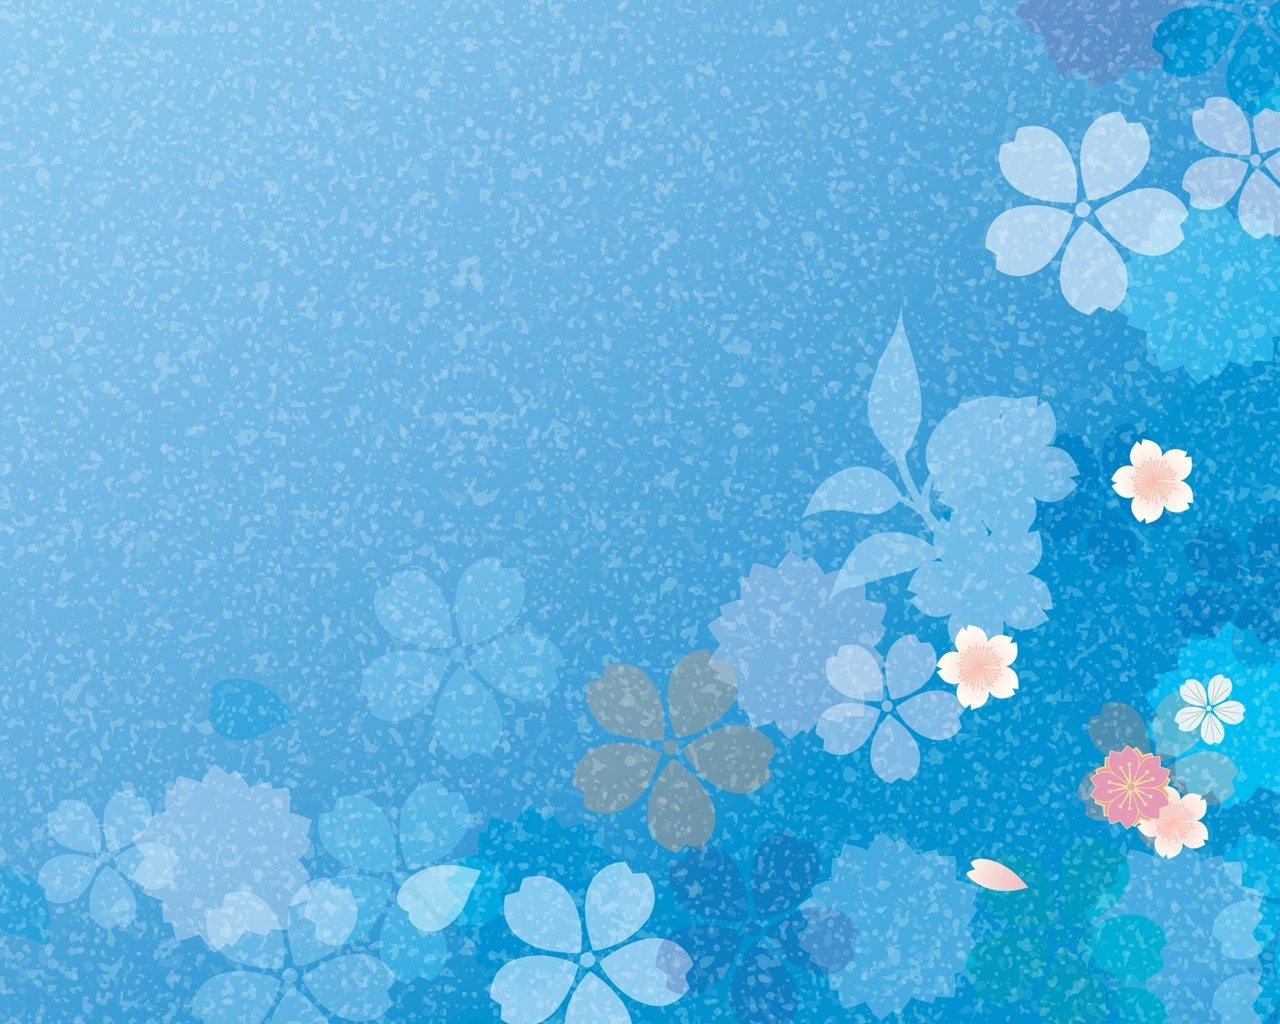 Hình nền hoa xanh cho máy tính: Hoa xanh, tô điểm cho chủ đề thiên nhiên và làm cho hình nền của bạn thêm sinh động. Với cách phối màu hoàn hảo, những bông hoa xanh sẽ khiến cho chiếc máy tính của bạn trở nên độc đáo và hấp dẫn hơn. Hãy để chúng làm nền tảng cho sự sáng tạo của bạn nhé!